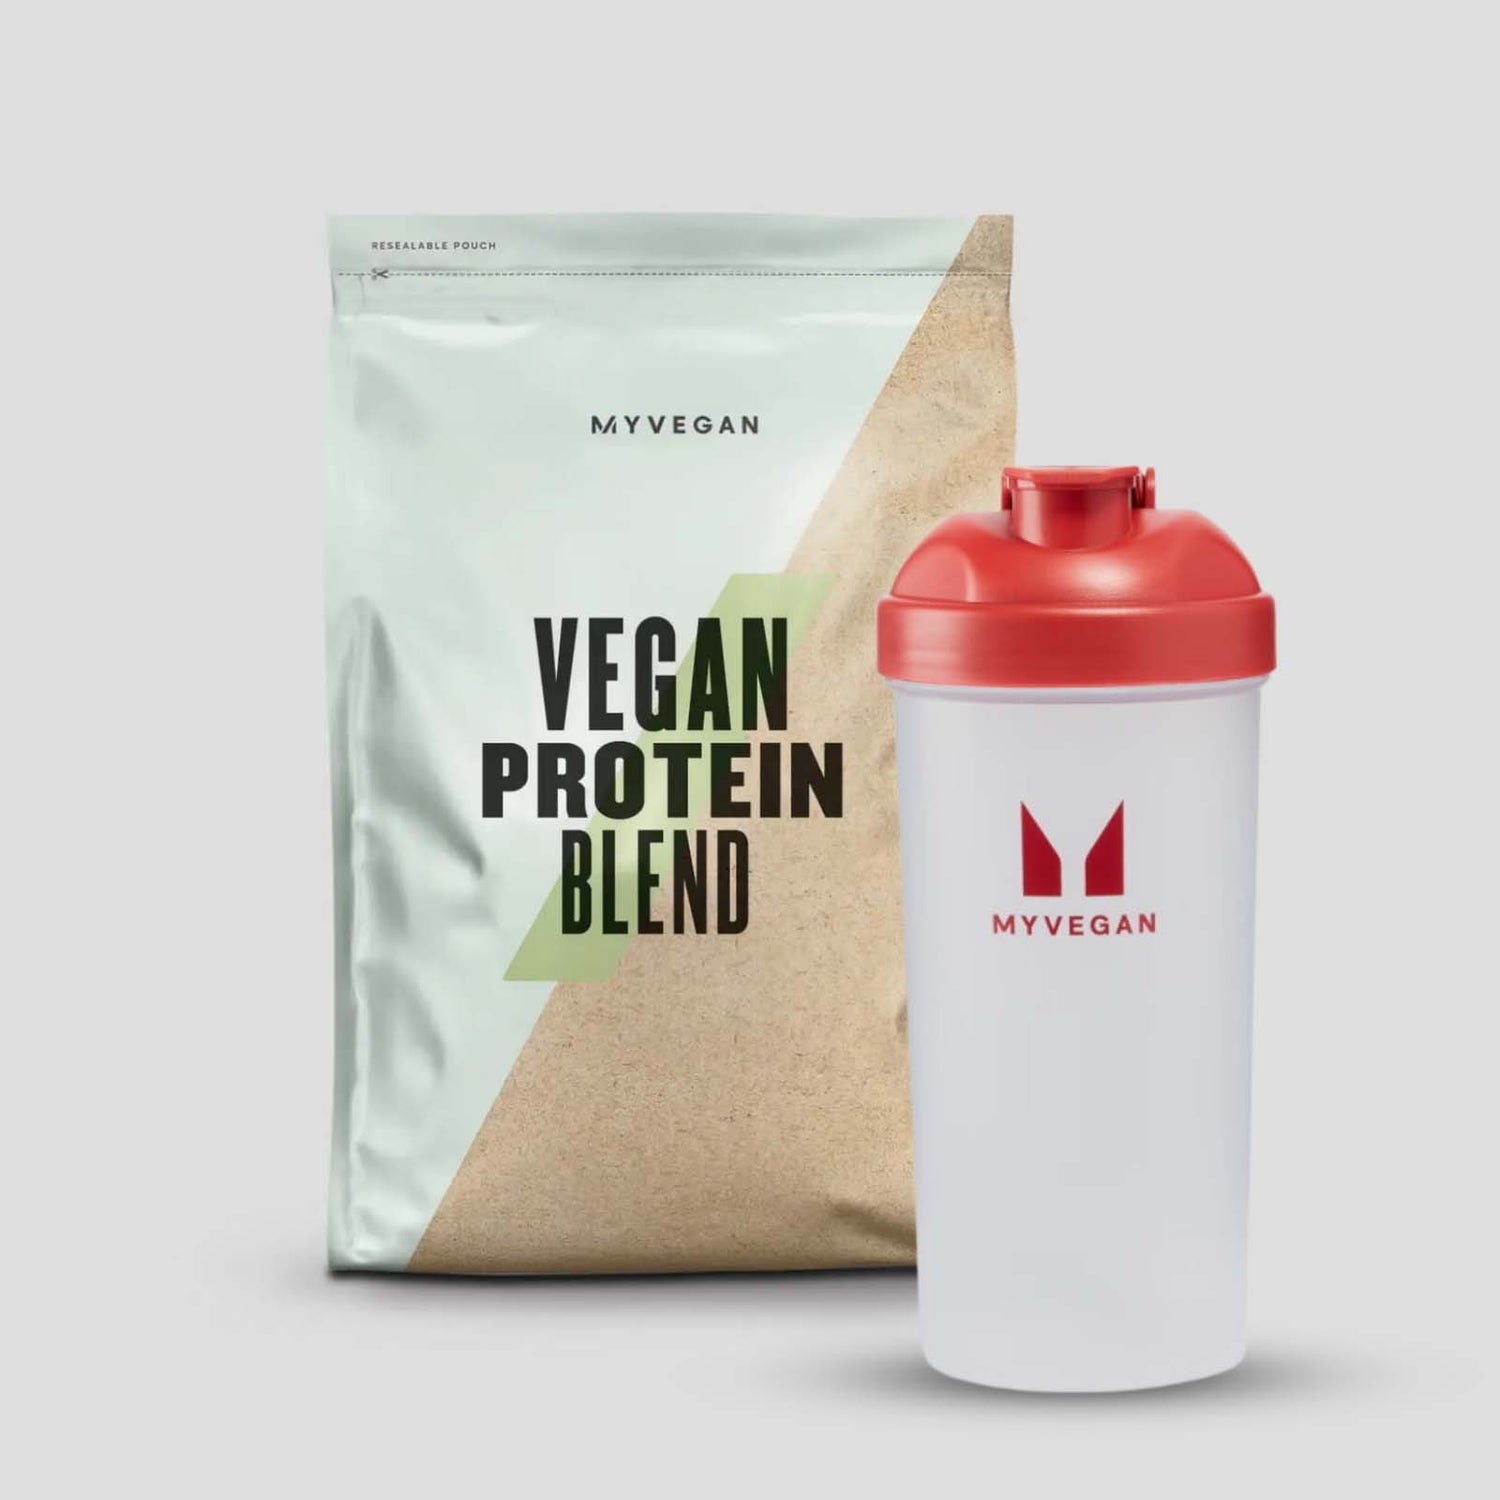 Myprotein Vegan Protein Starter Pack - Schokolade